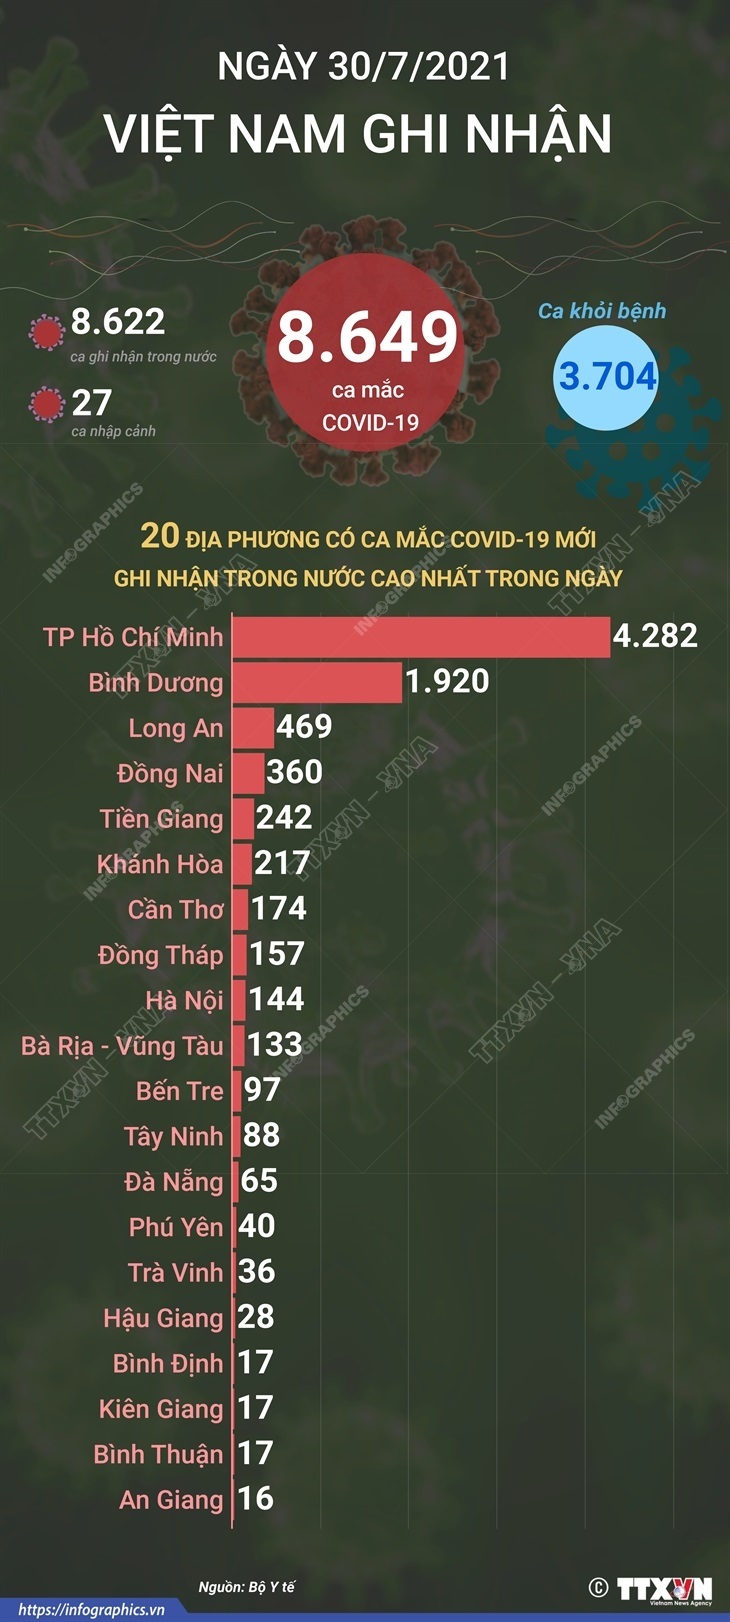 Ngày 30/7/2021: Việt Nam ghi nhận 8,649 ca mắc COVID-19.